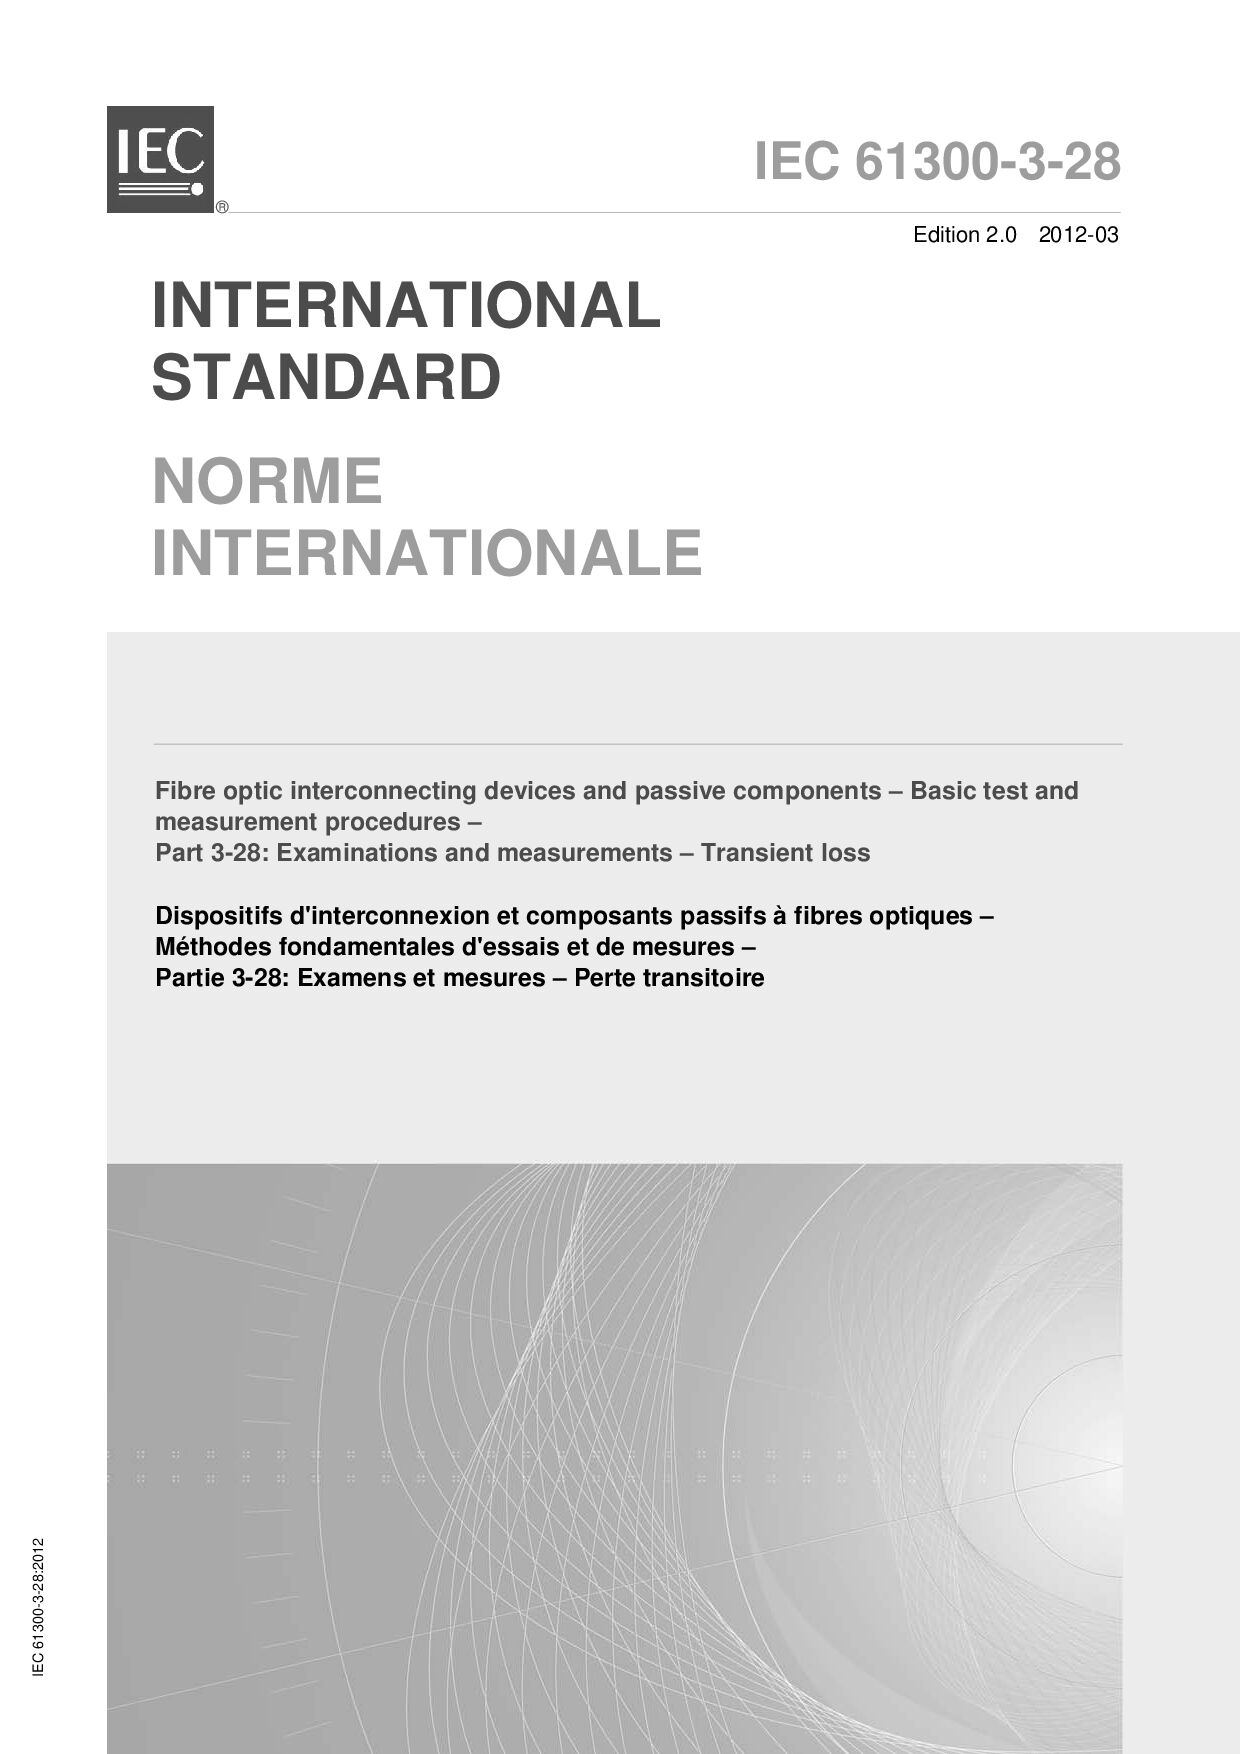 IEC 61300-3-28:2012